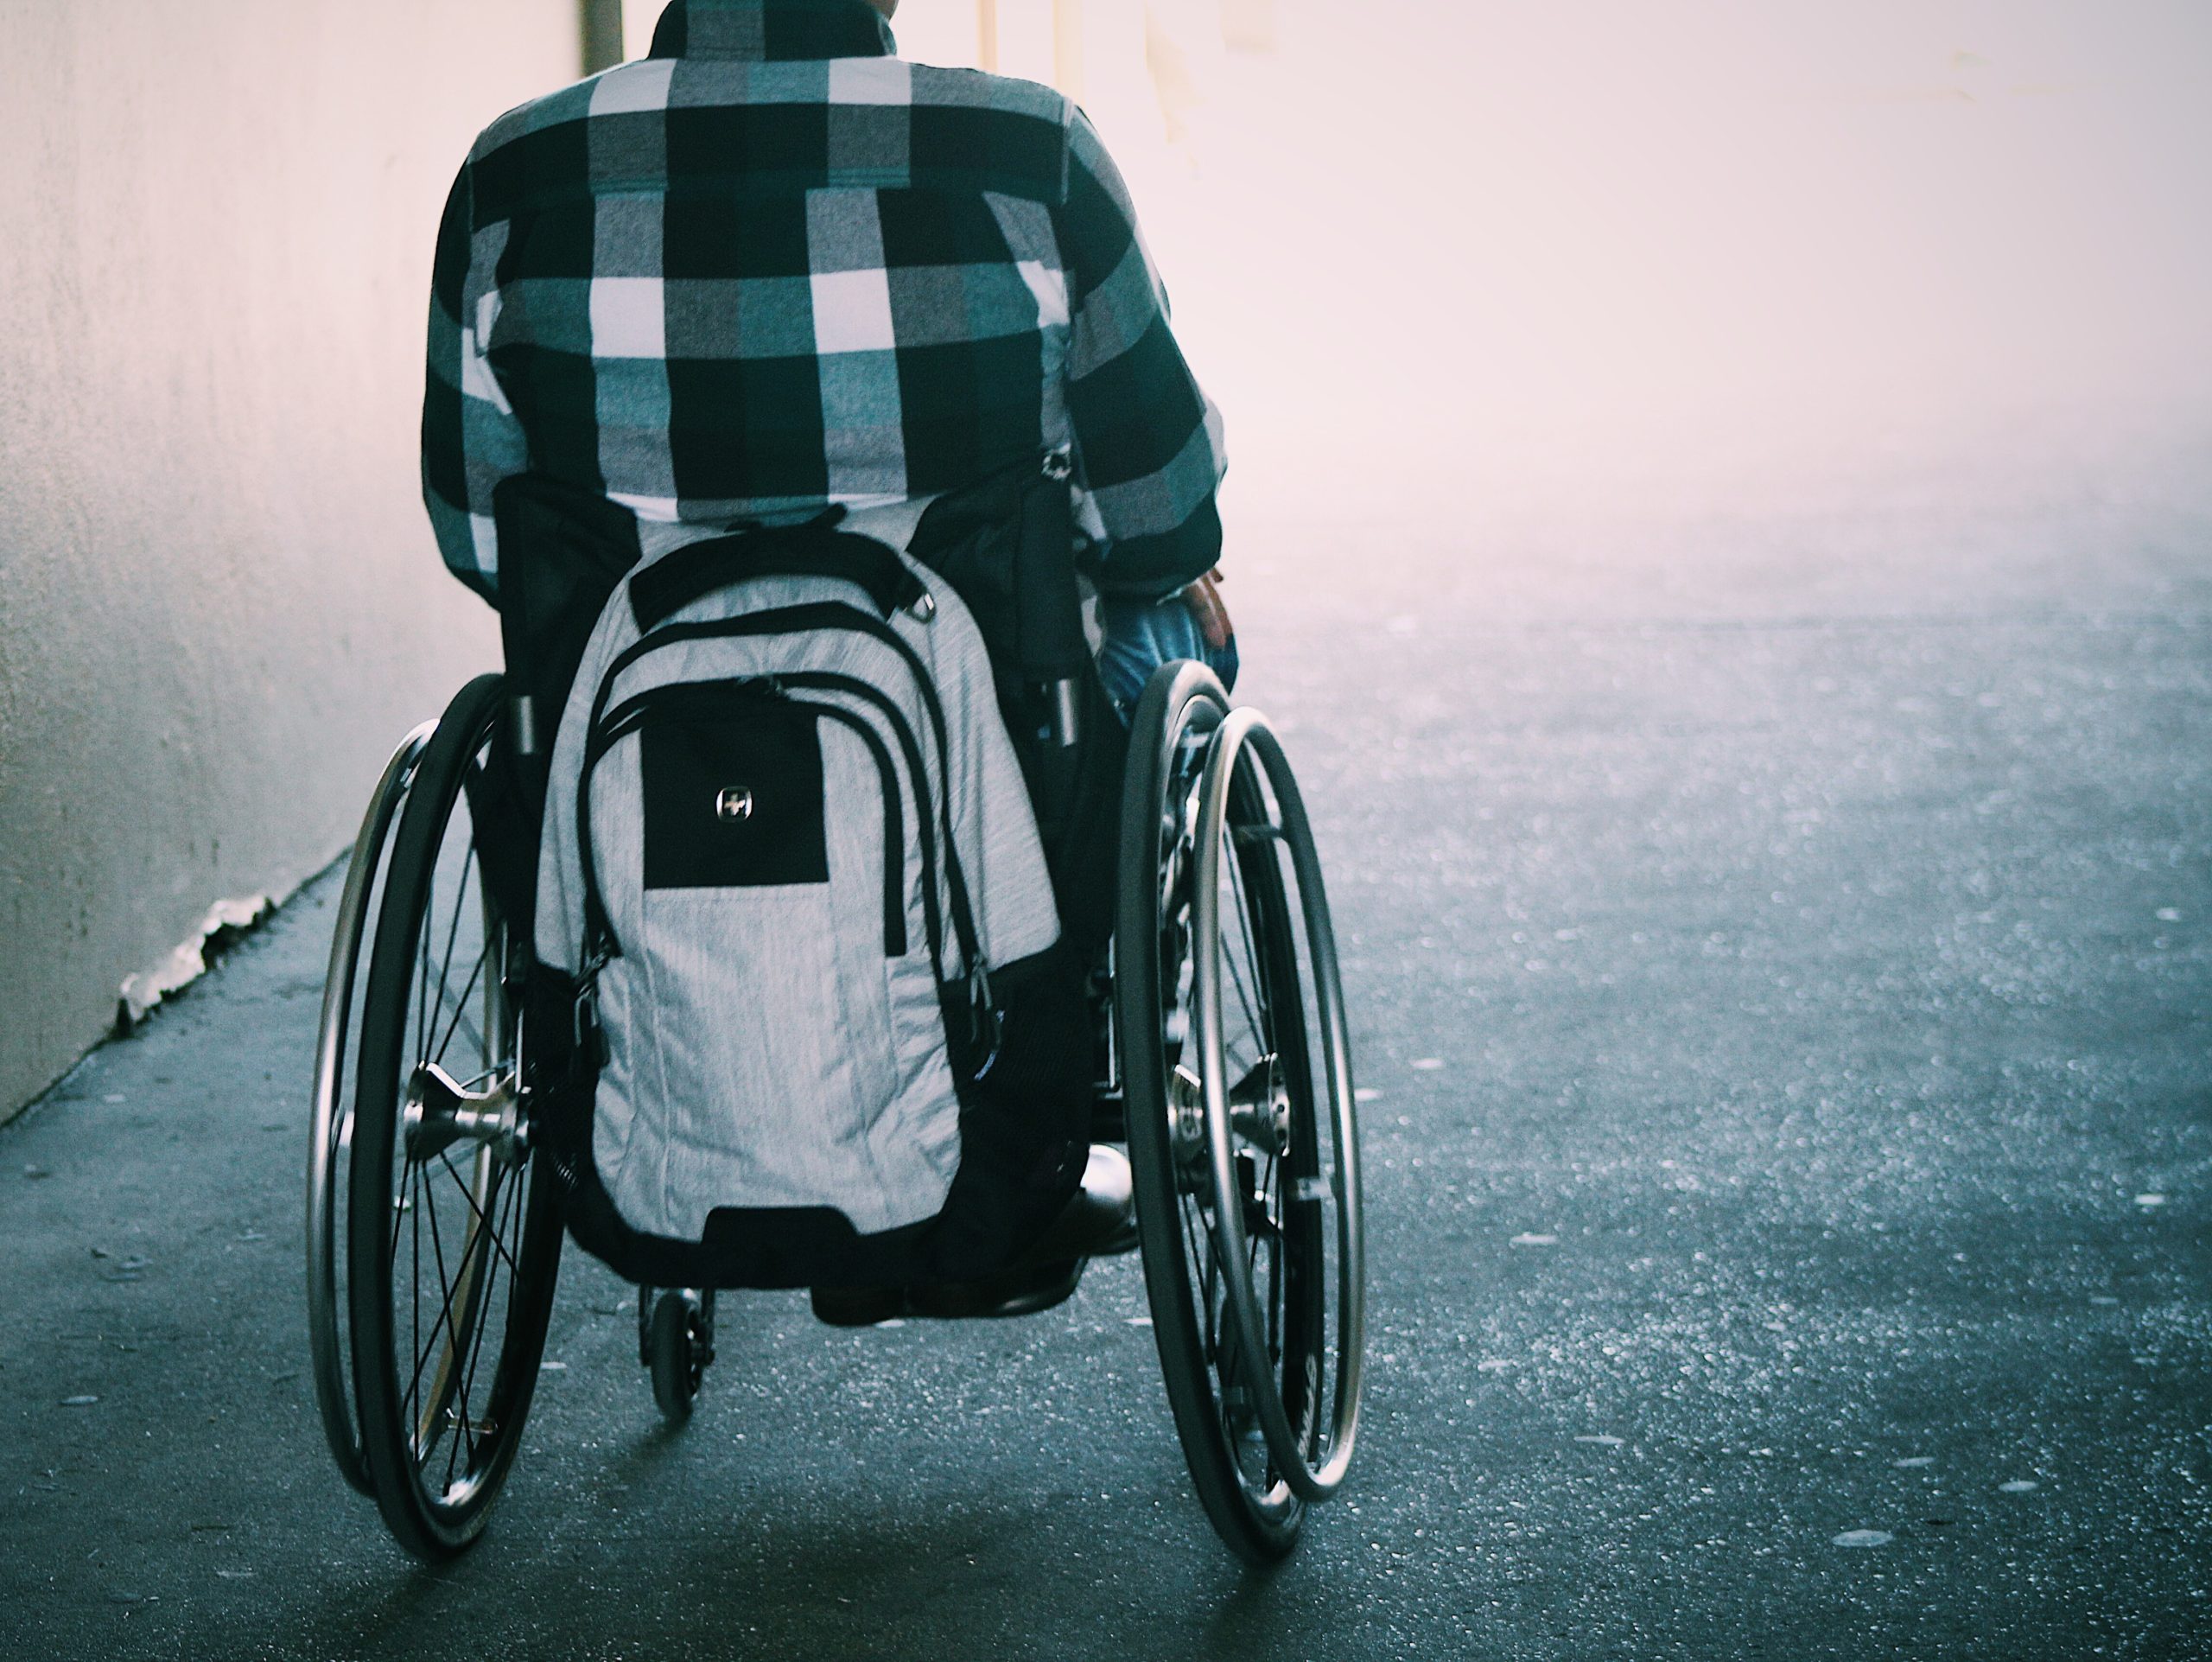 Ryggtavla av en person i rullstol. Bak på rullstolen hänger en vit ryggsäck. Personen har en vitblårutig skjorta och bakgrunden är suddig med ljus. Hela bilden har en blåaktig ton.